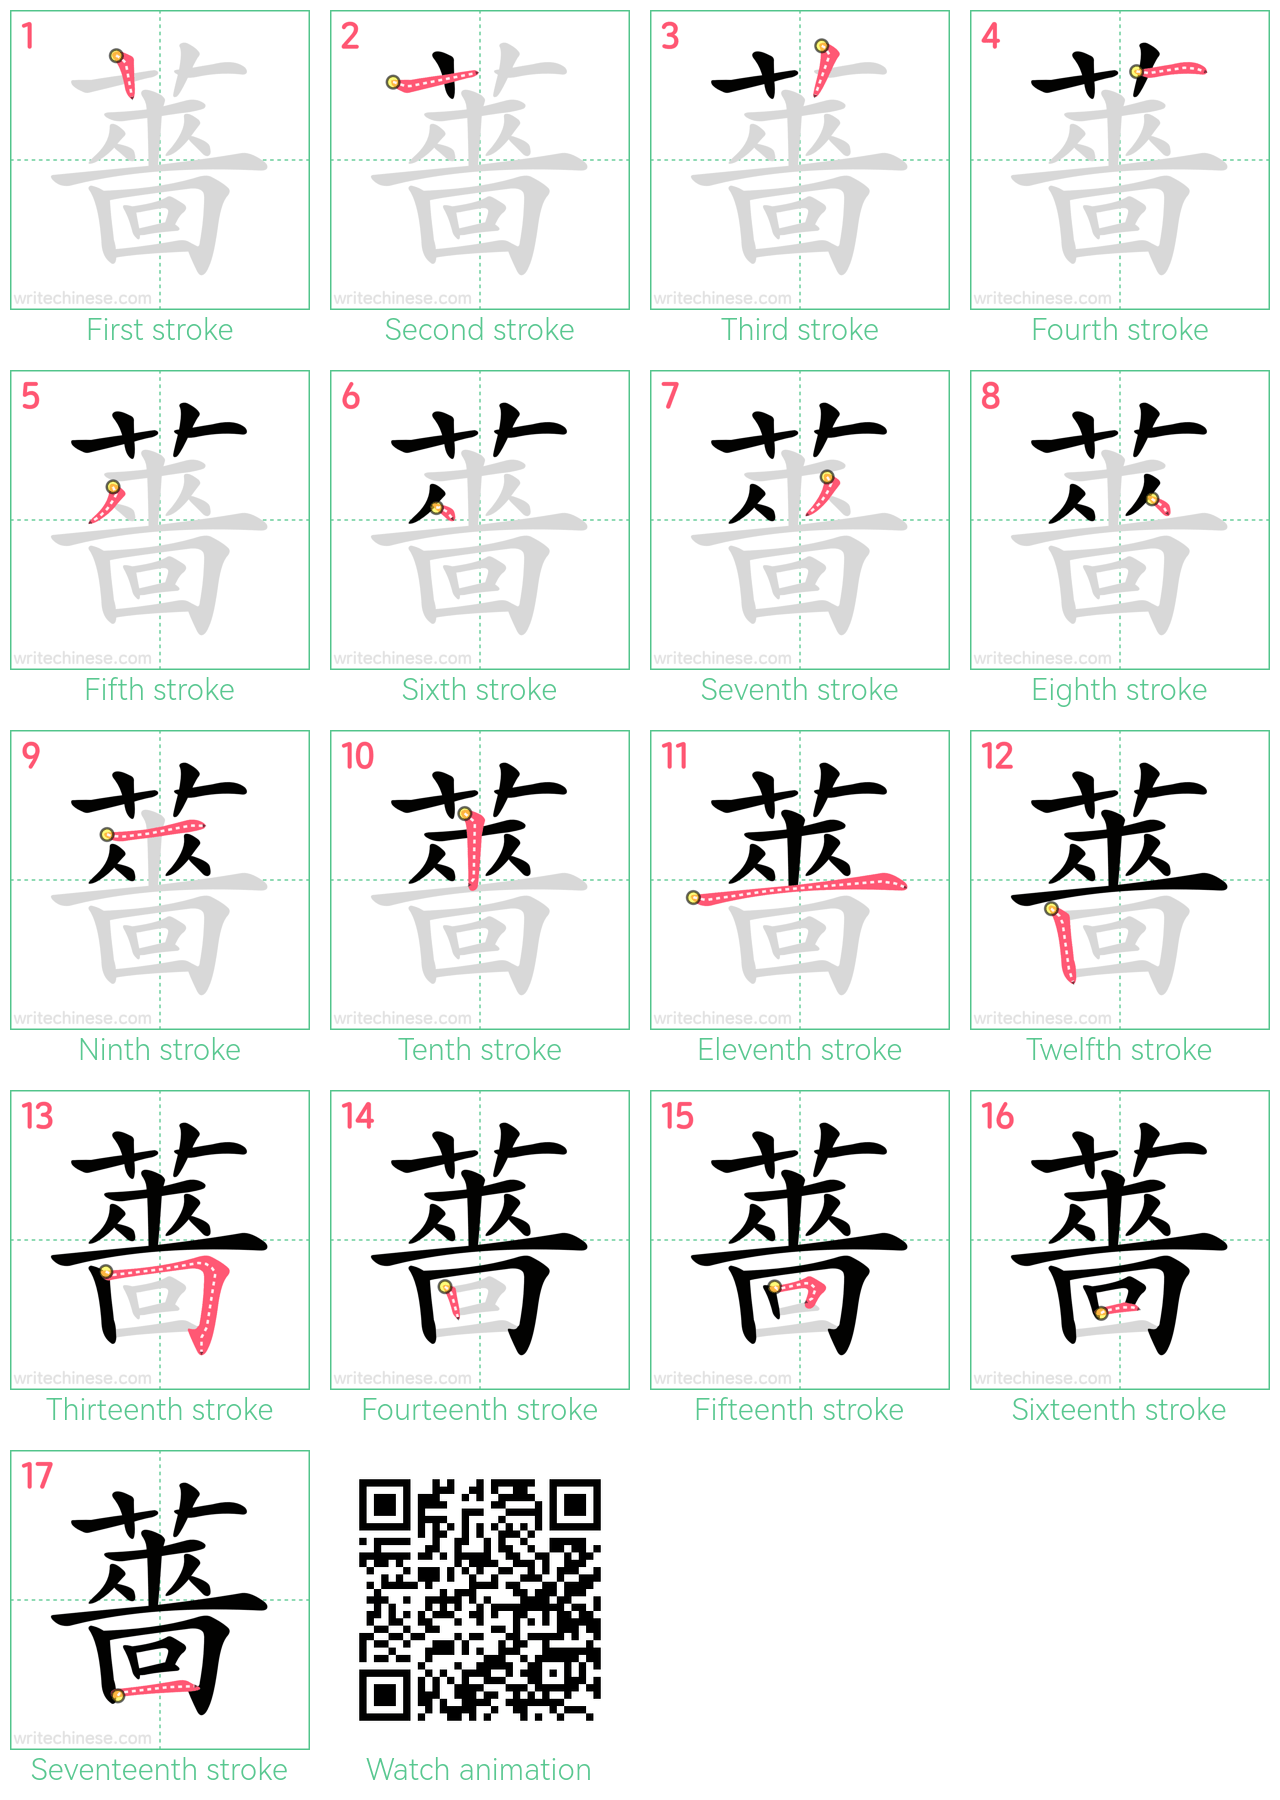 薔 step-by-step stroke order diagrams